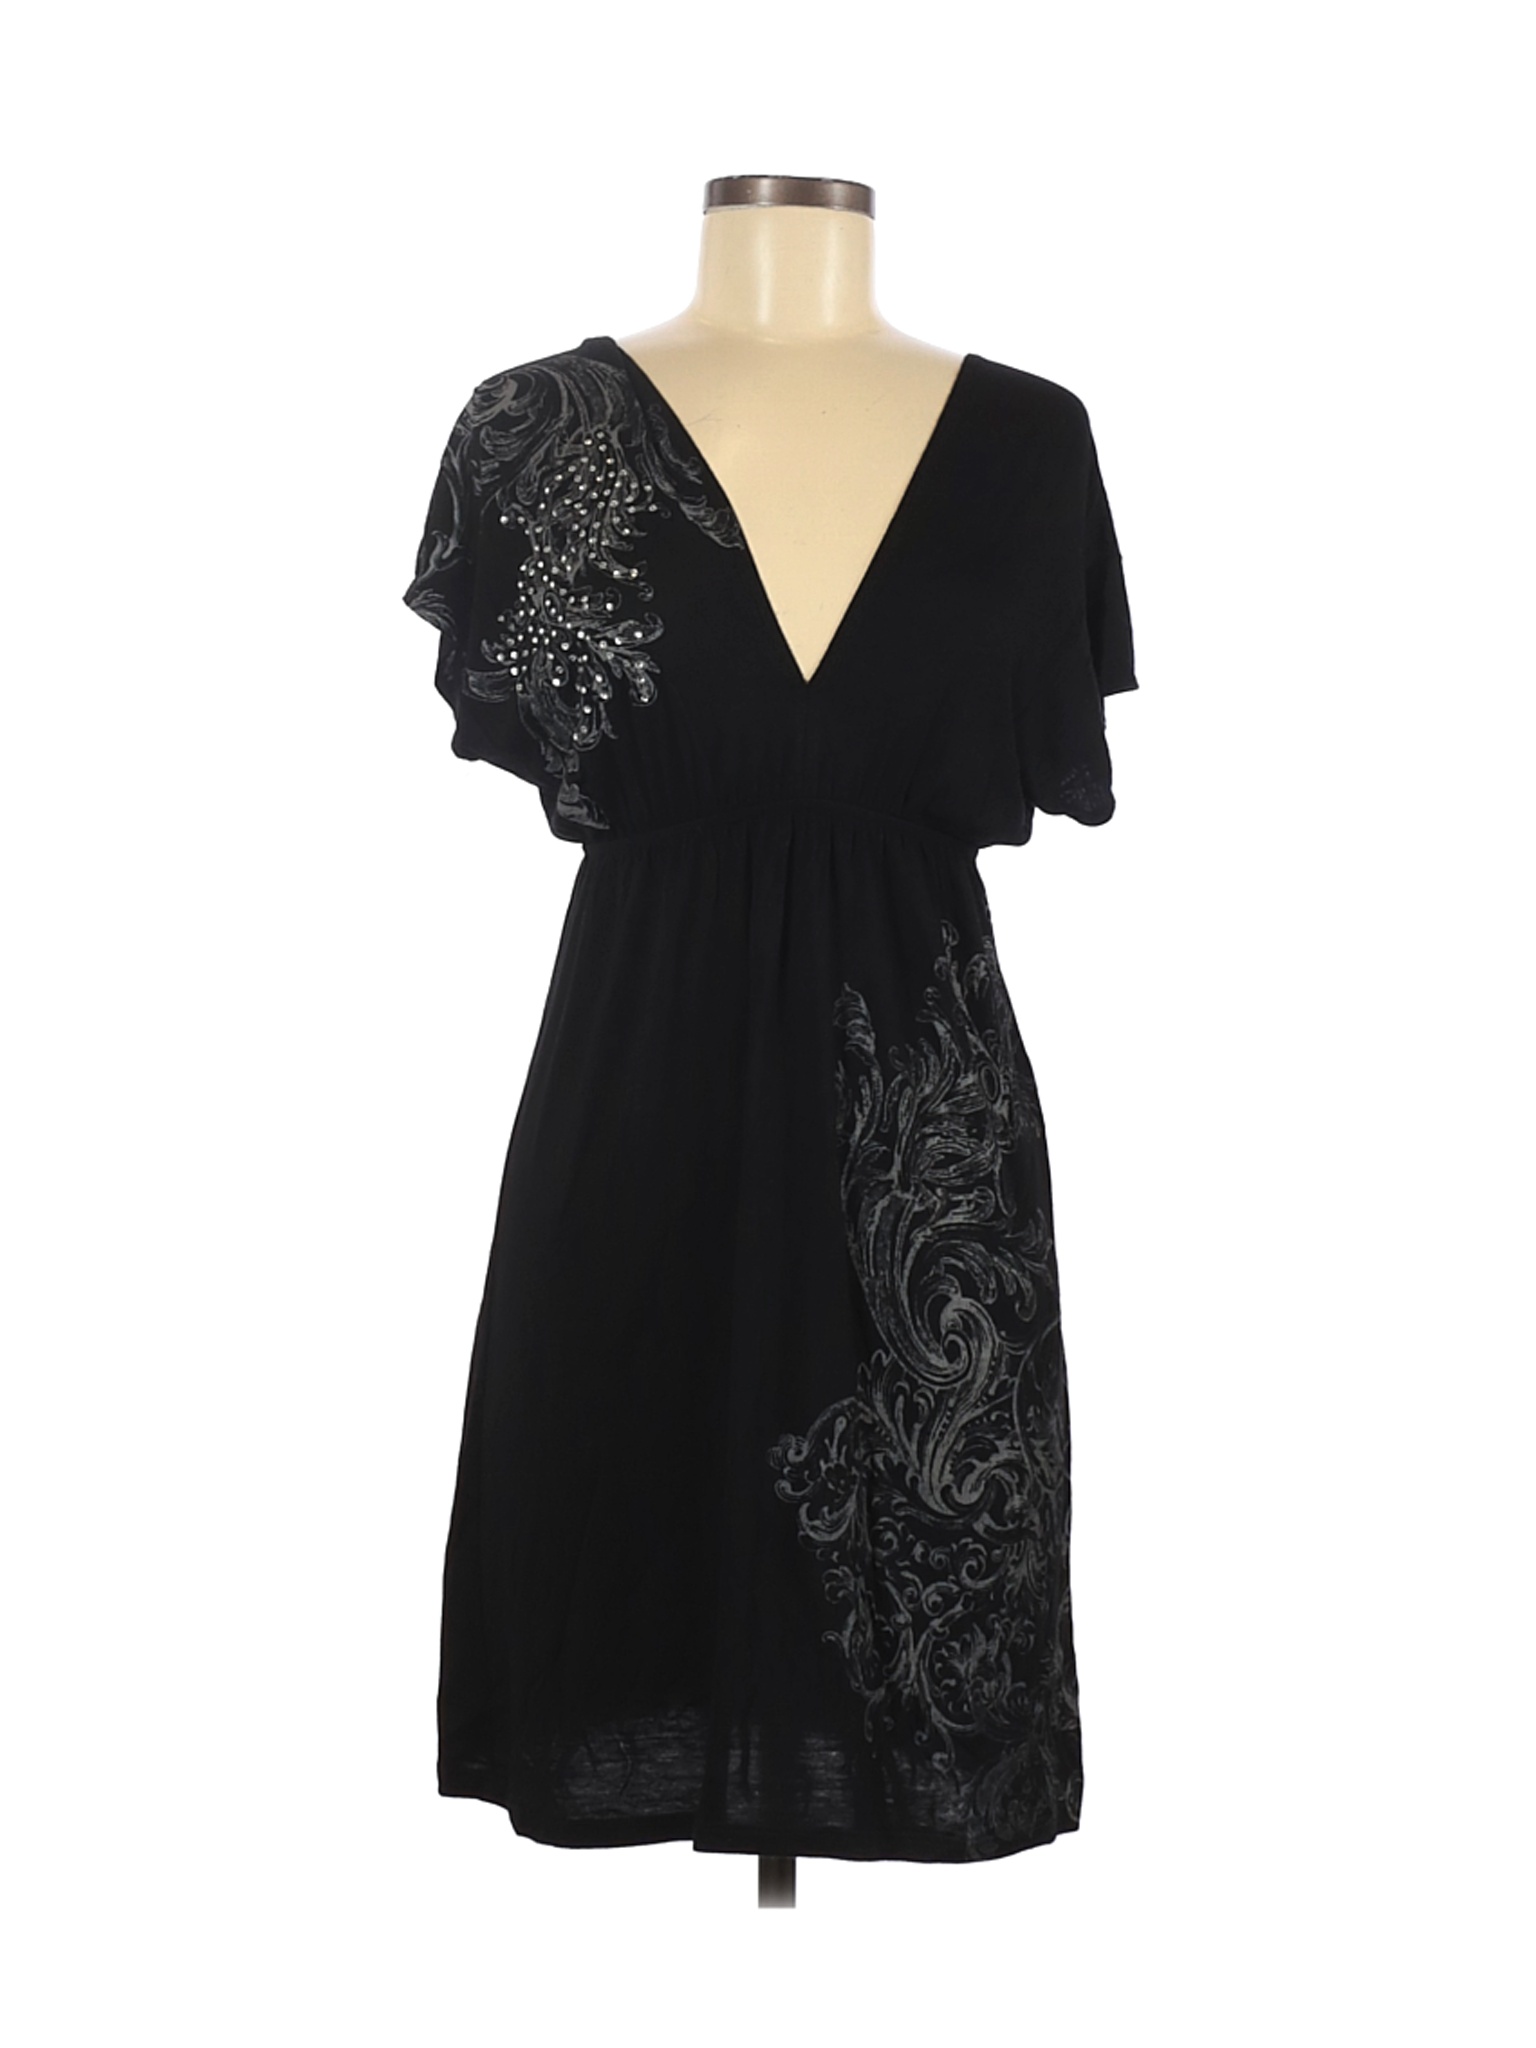 Rhapsodielle Women Black Casual Dress L | eBay